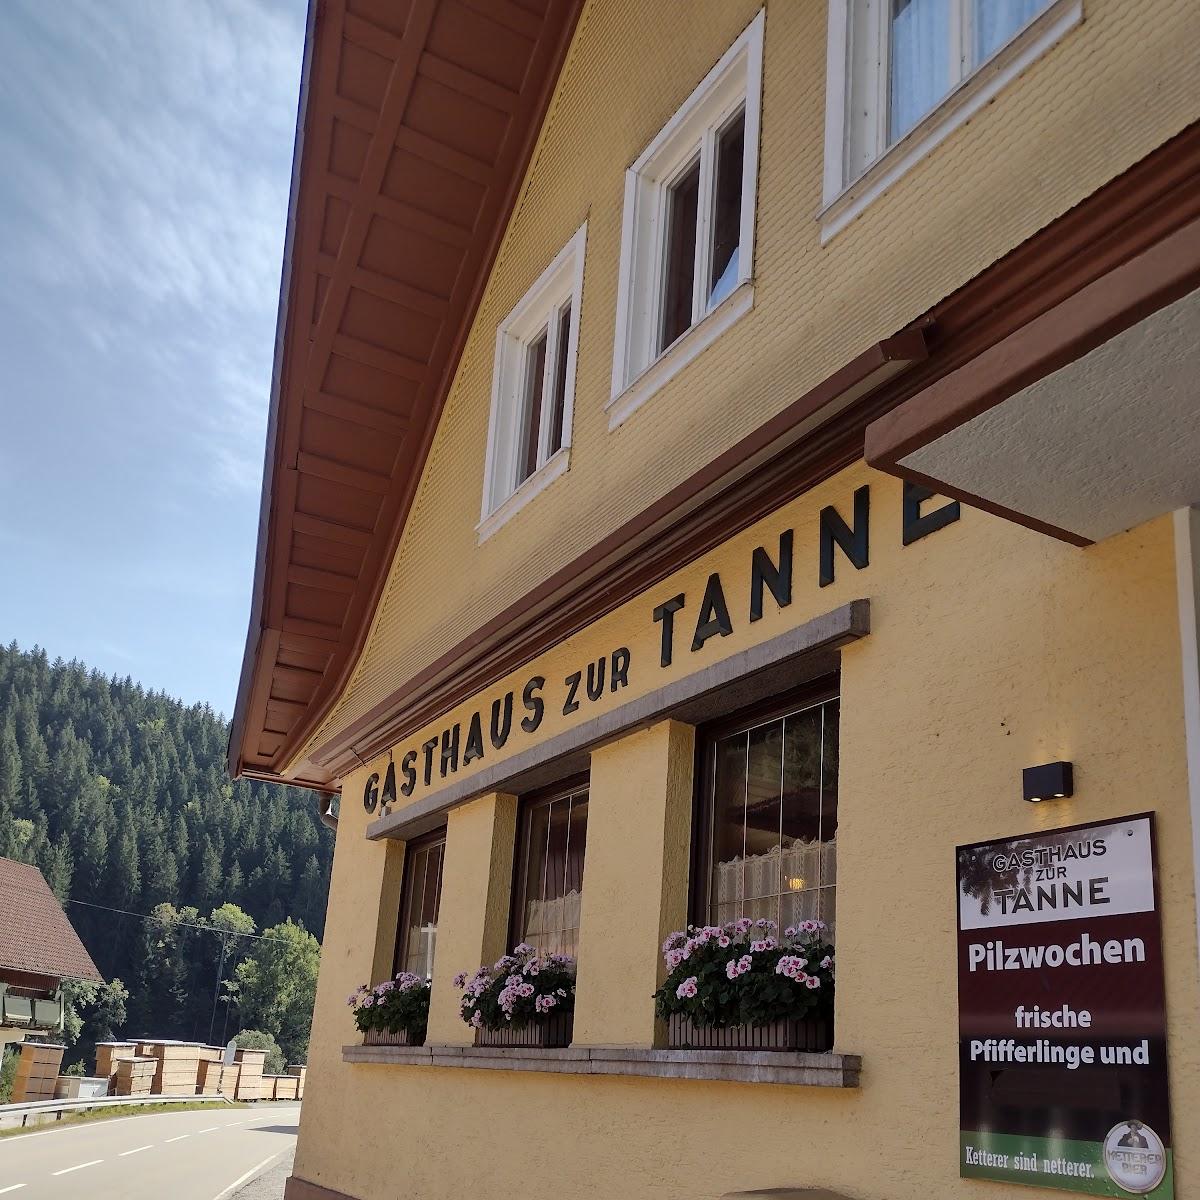 Restaurant "Gasthof Tanne" in Bad Rippoldsau-Schapbach